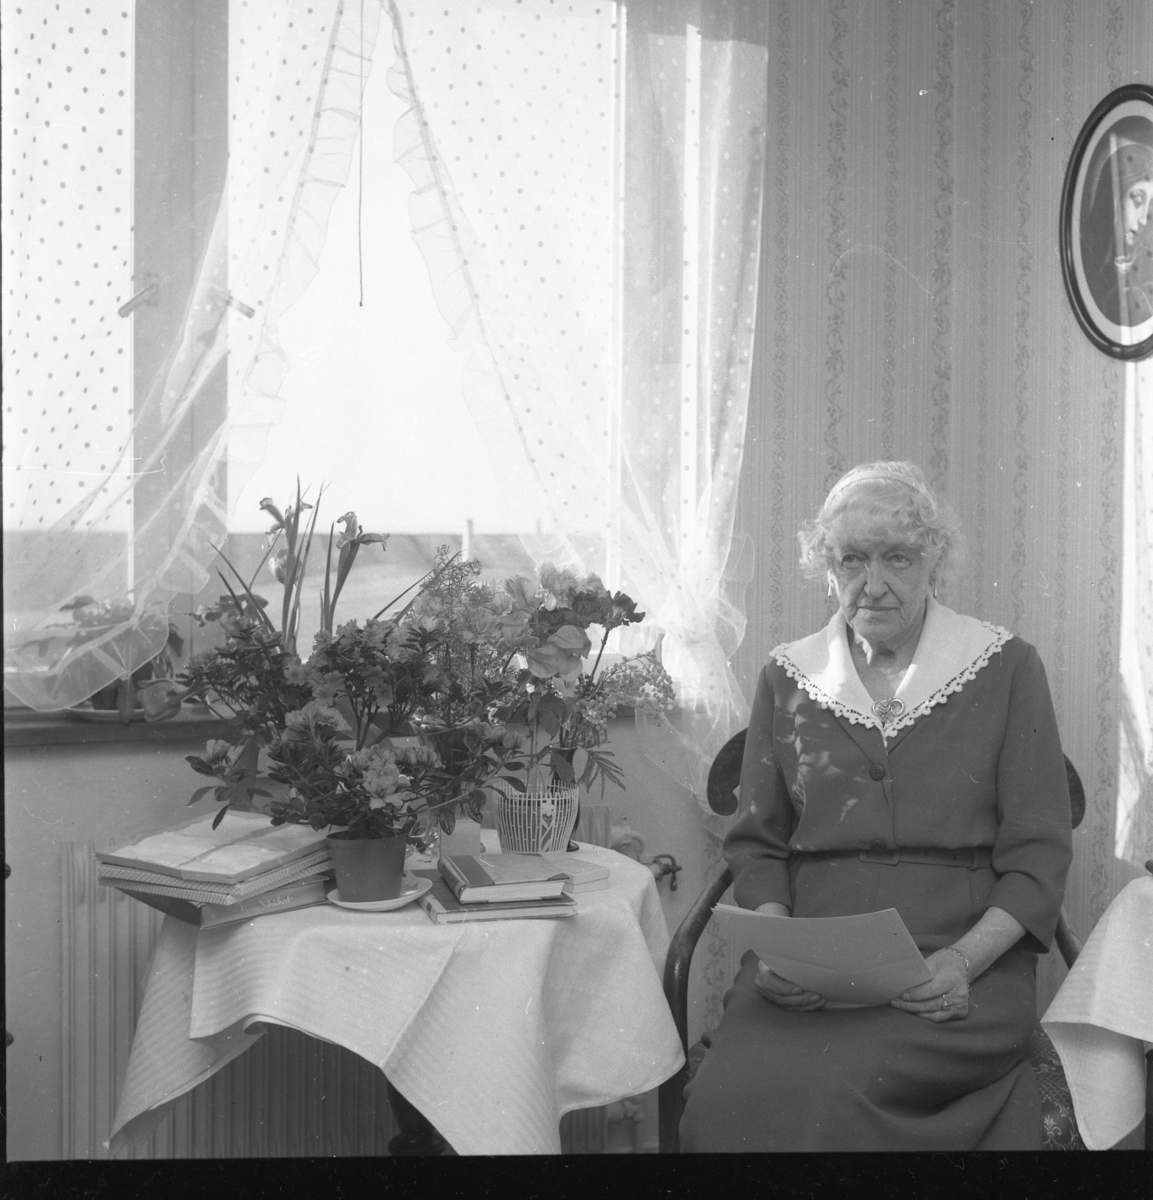 Fröken Hård af Segerstad sitter vid ett bord med blommor och håller några papper i knät. Hon heter eventuellt Gertrud och fyller 80 år.